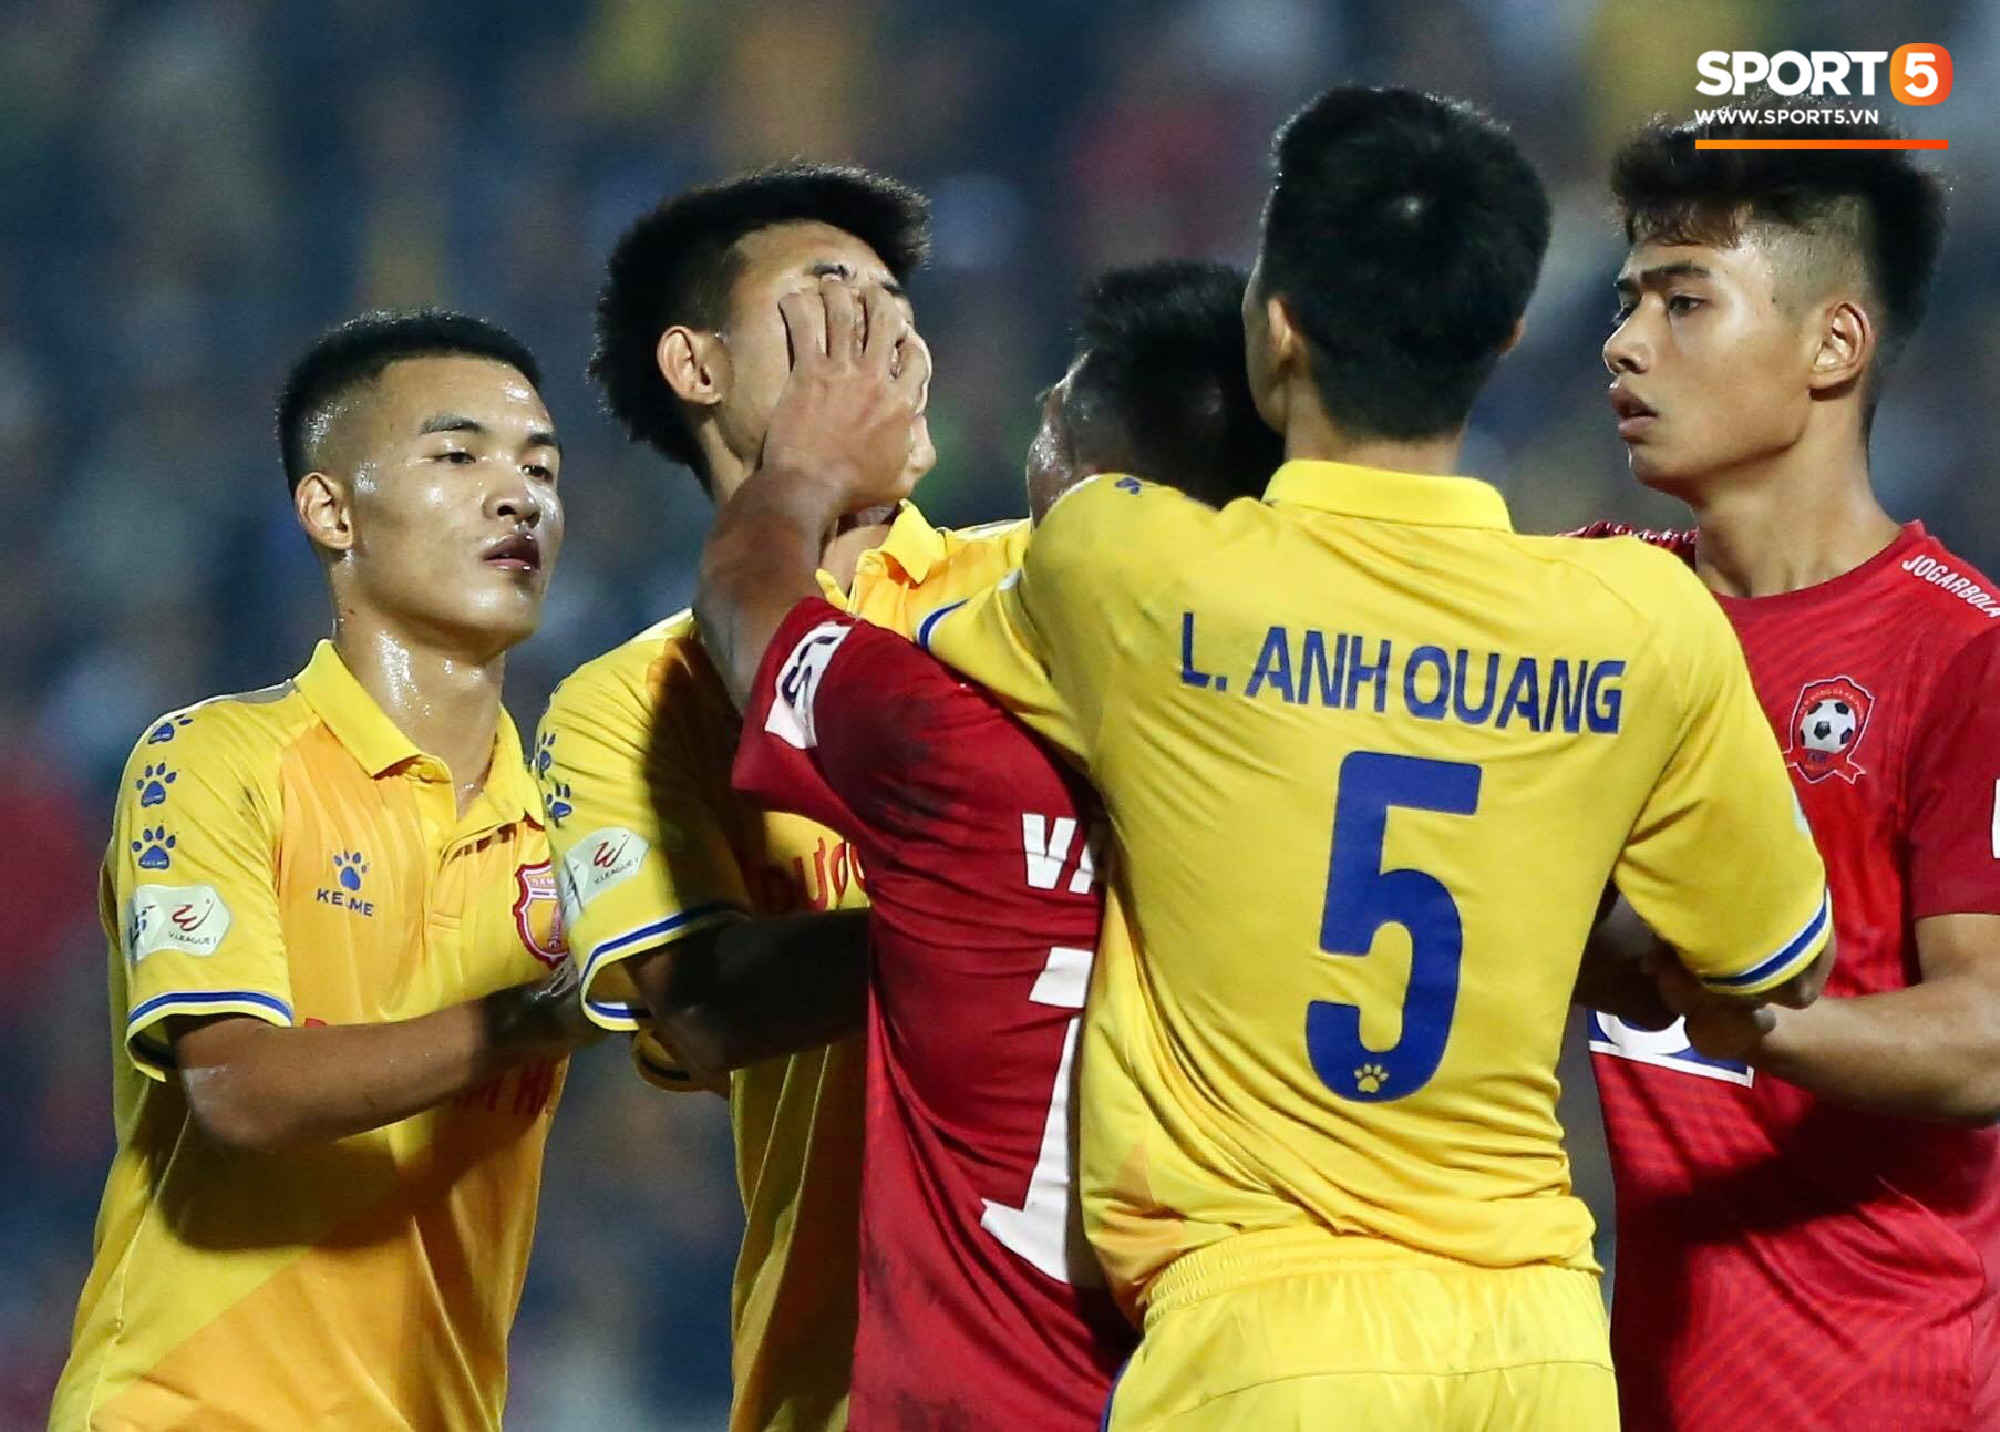 Cầu thủ ném bóng vào mặt Hồng Duy bị cấm thi đấu hai trận, bị đánh giá là có hành vi bạo lực - Ảnh 2.